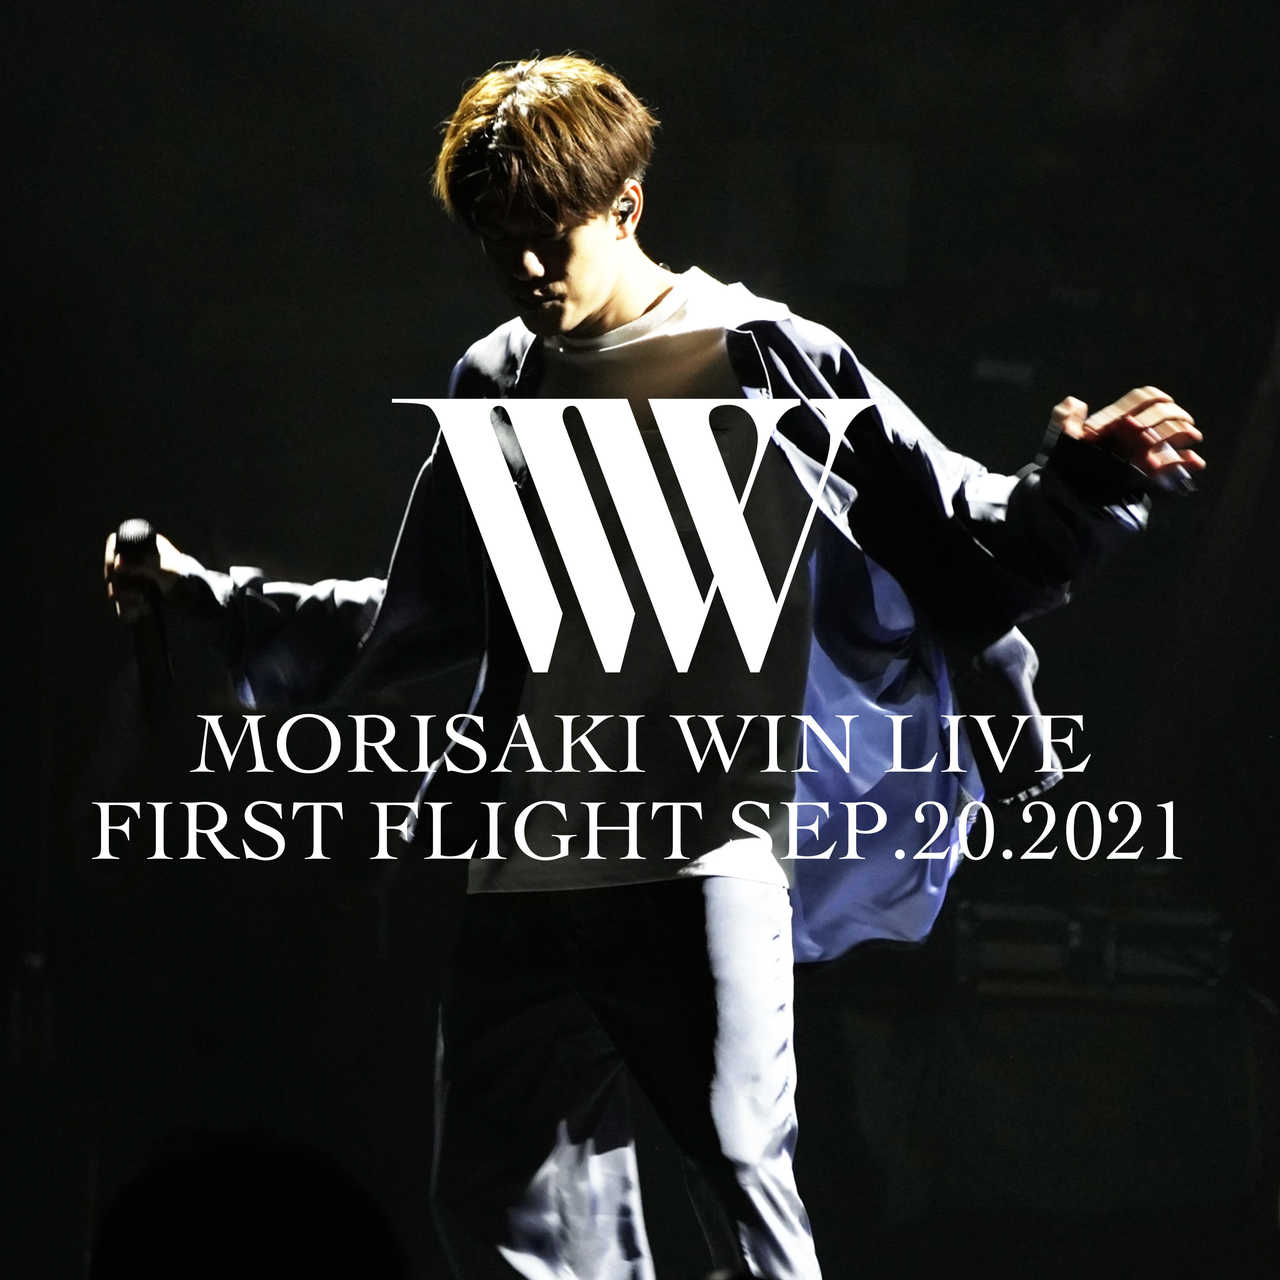 アルバム『FIRST FLIGHT SEP.20.2021』